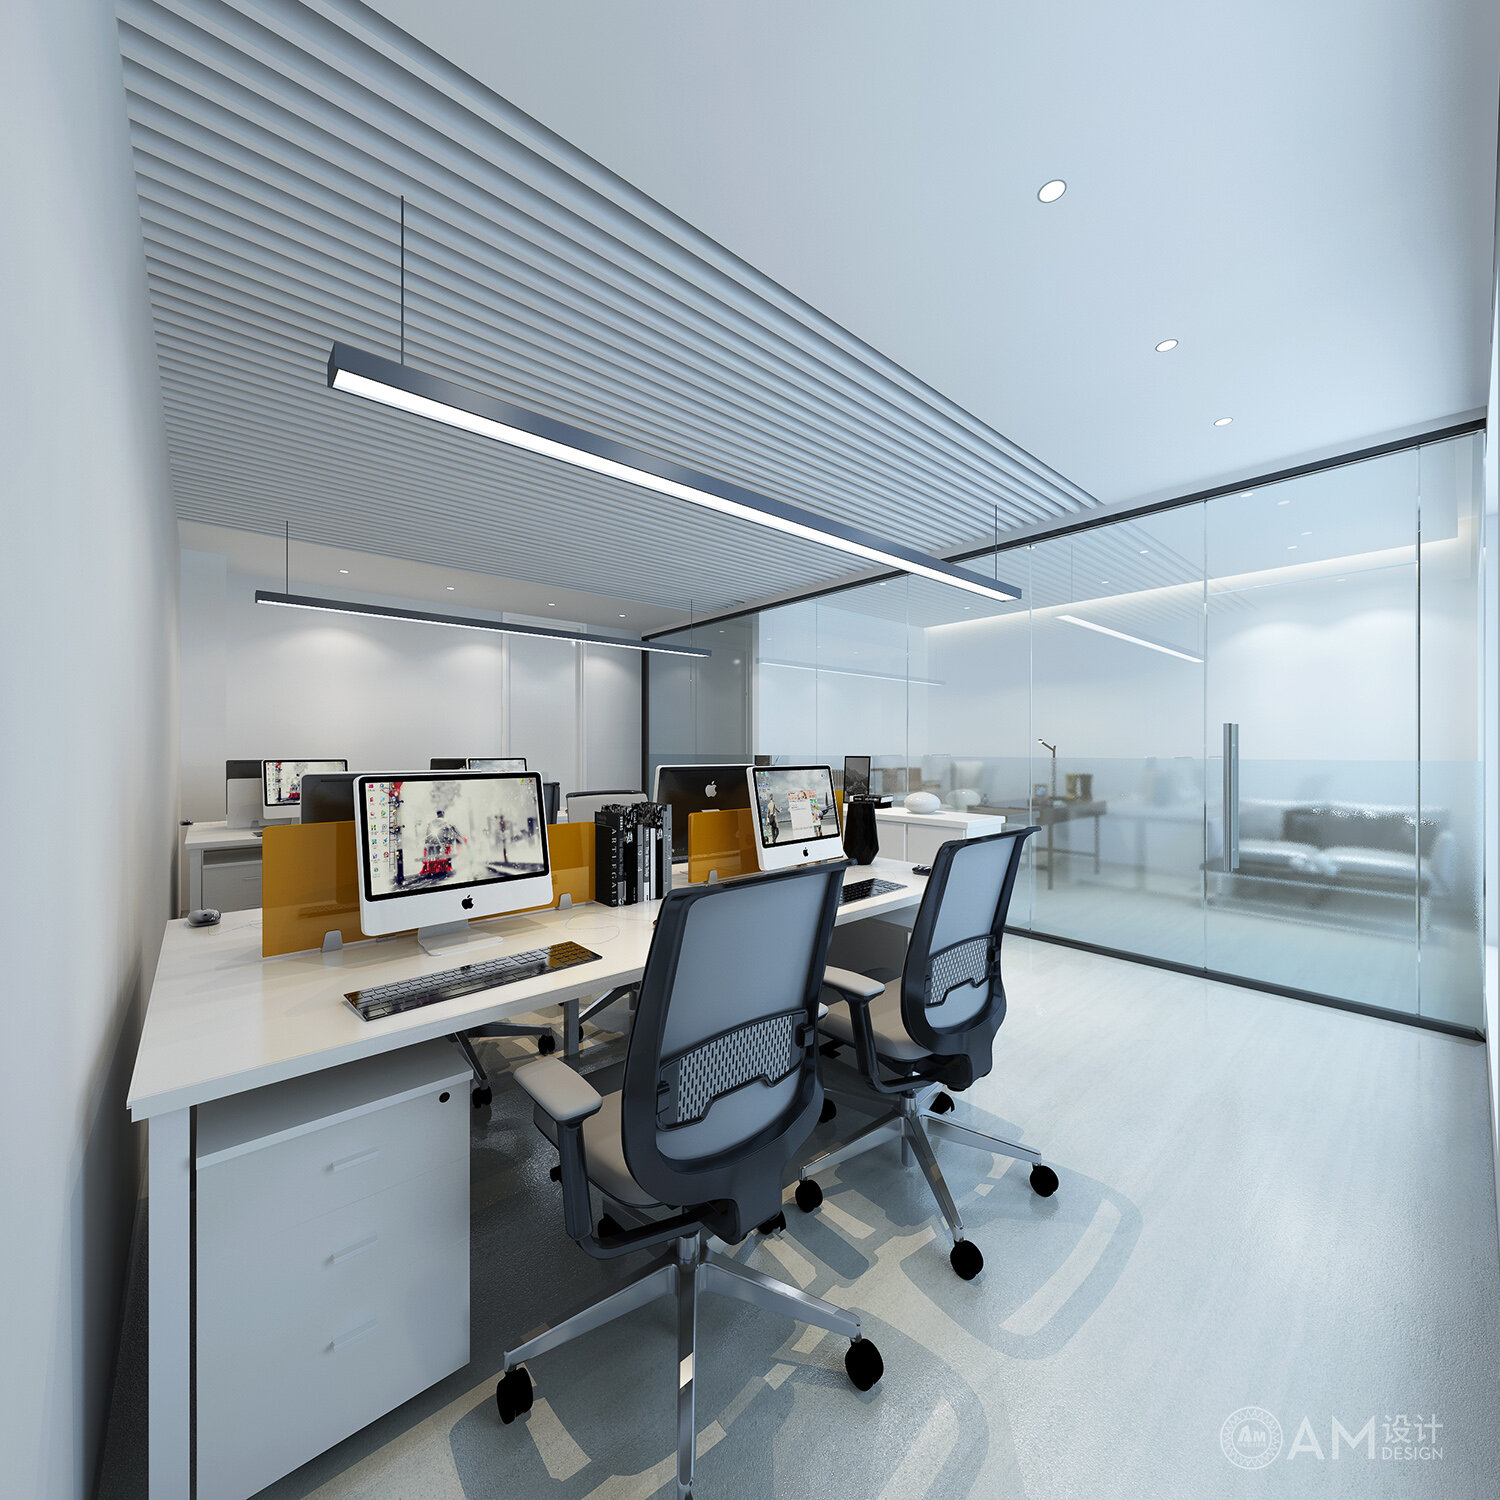 AM设计 | 北京通州新城热力办公楼办公室设计